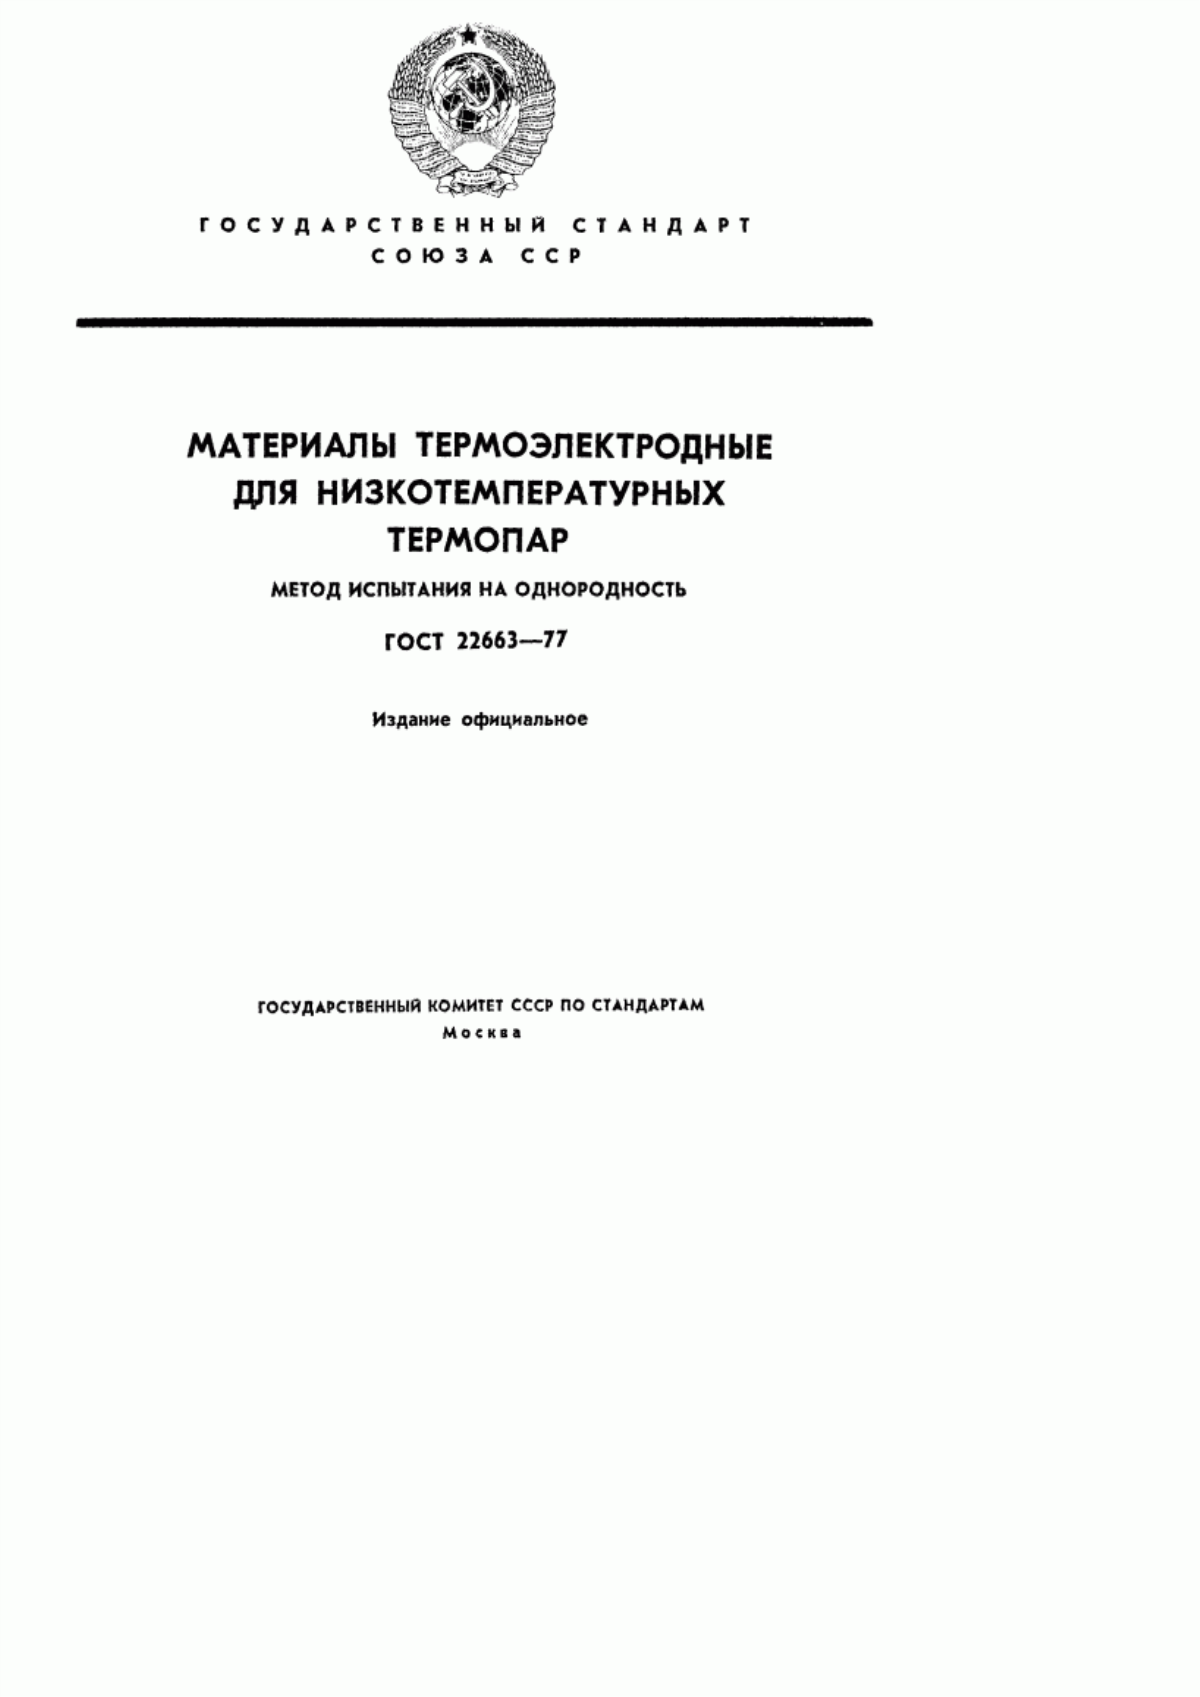 ГОСТ 22663-77 Материалы термоэлектродные для низкотемпературных термопар. Метод испытания на однородность